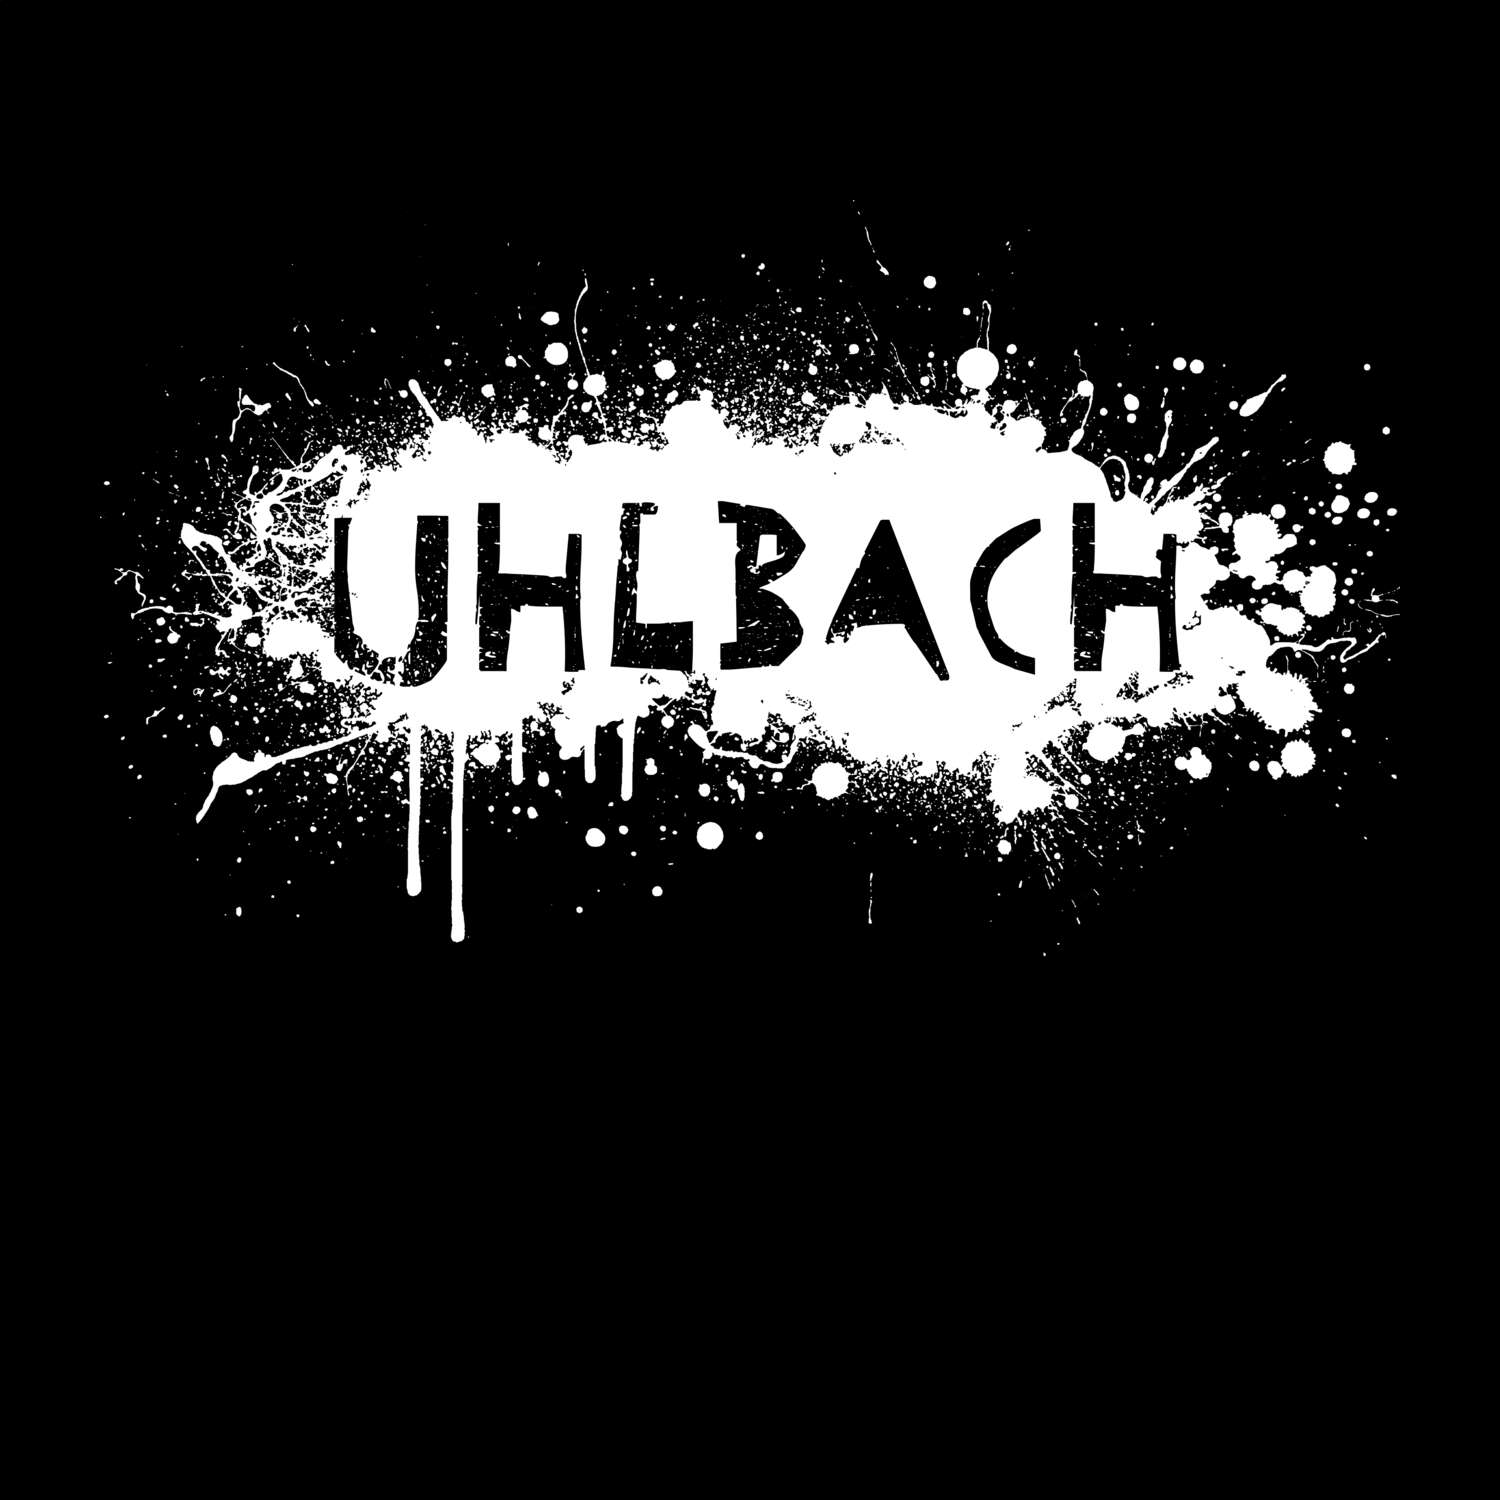 Uhlbach T-Shirt »Paint Splash Punk«